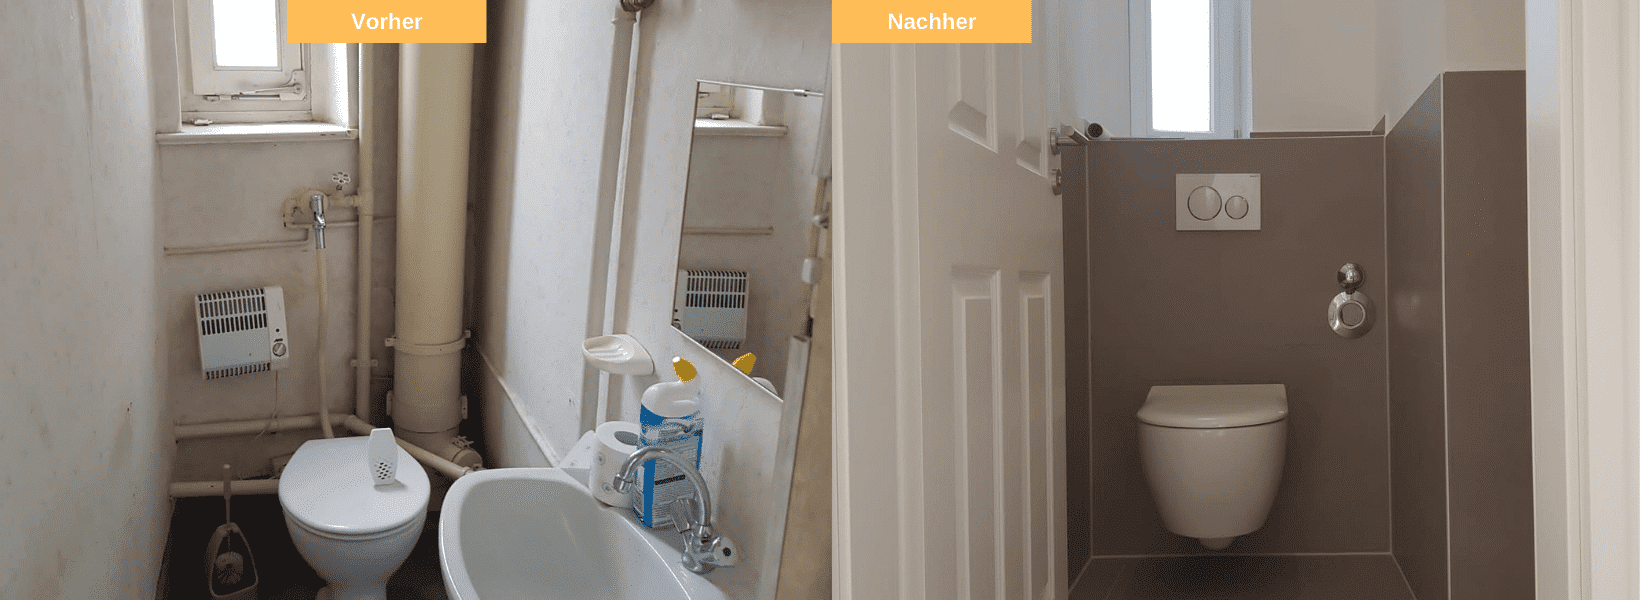 WC Badezimmer vorher nachher Stuttgart Sanierung